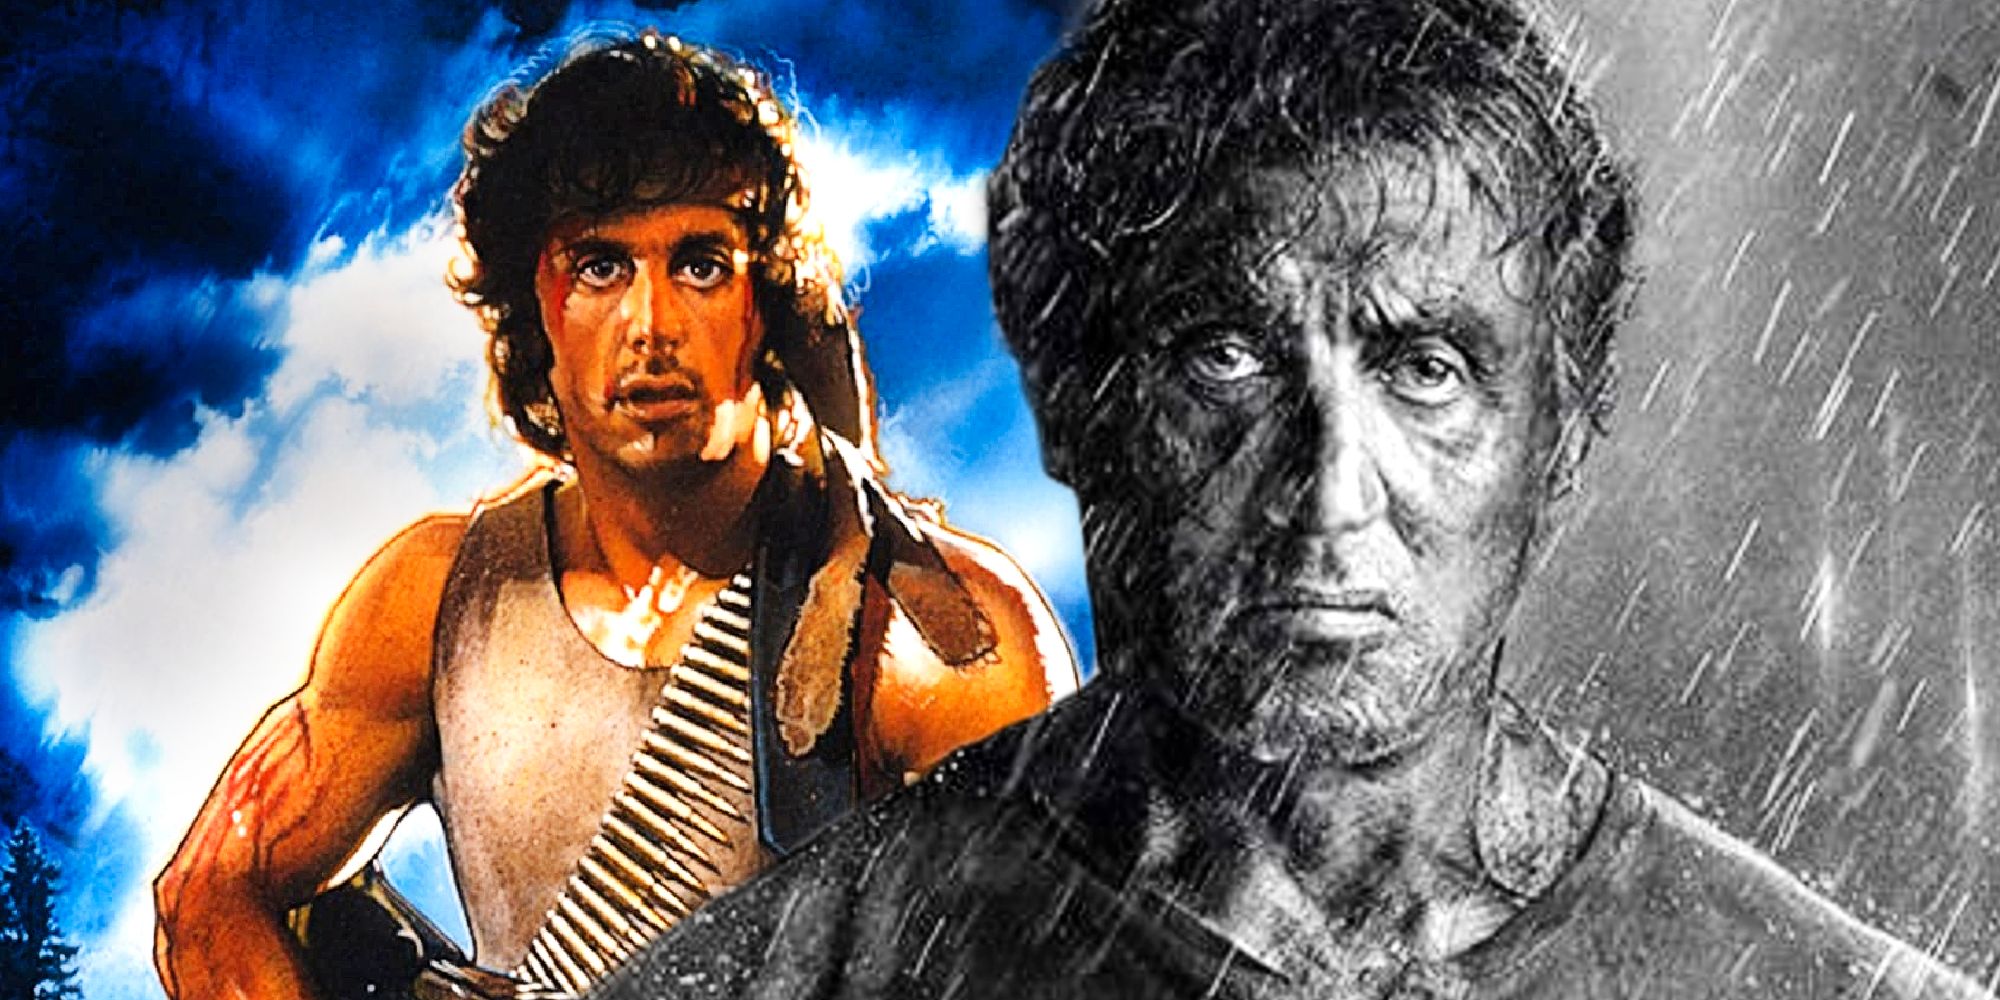 La idea de la precuela de Rambo de Stallone perdería lo que hace que el personaje sea genial